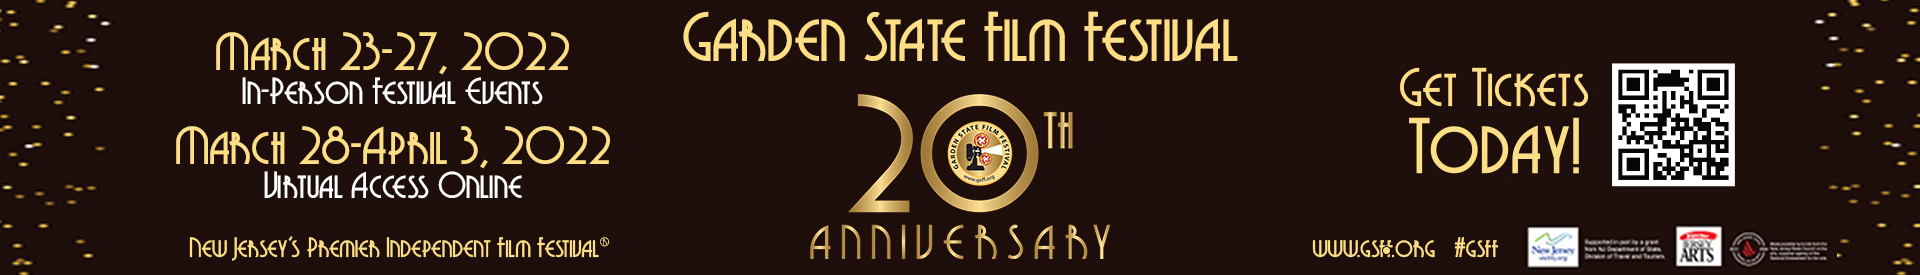 Garden State Film Festival 2022